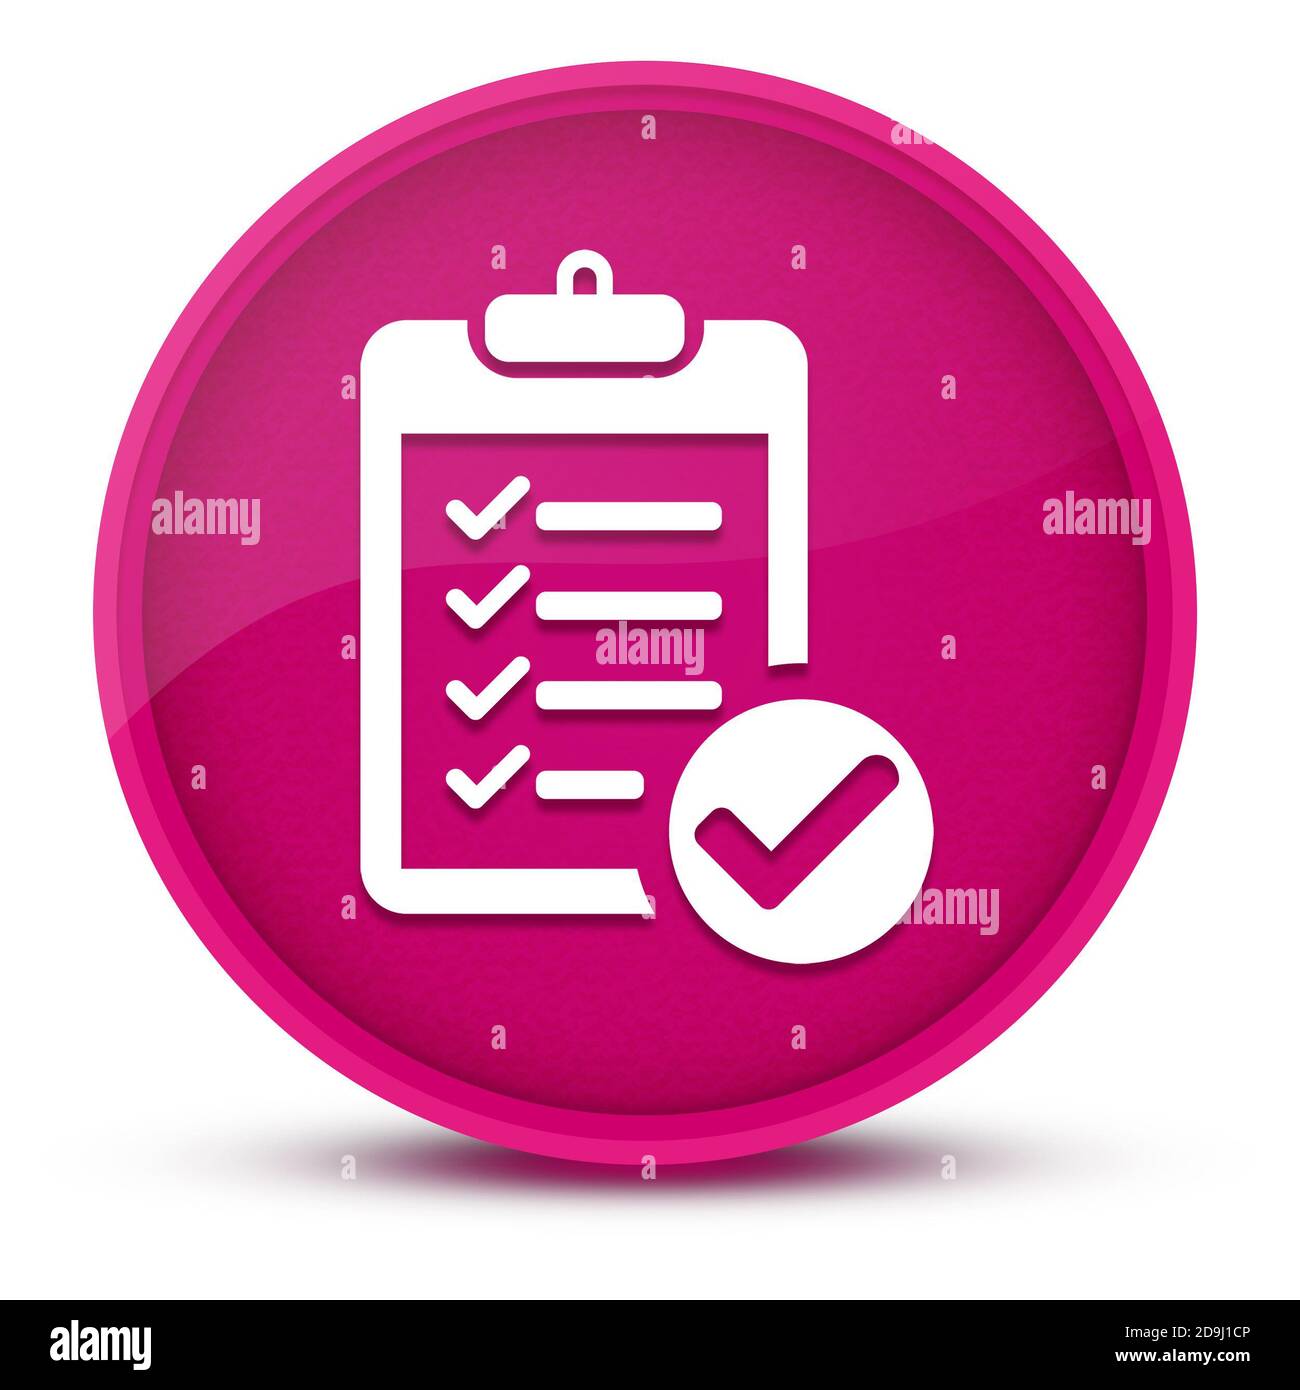 Lista di controllo lussuoso rosa lucido pulsante rotondo illustrazione astratta Foto Stock